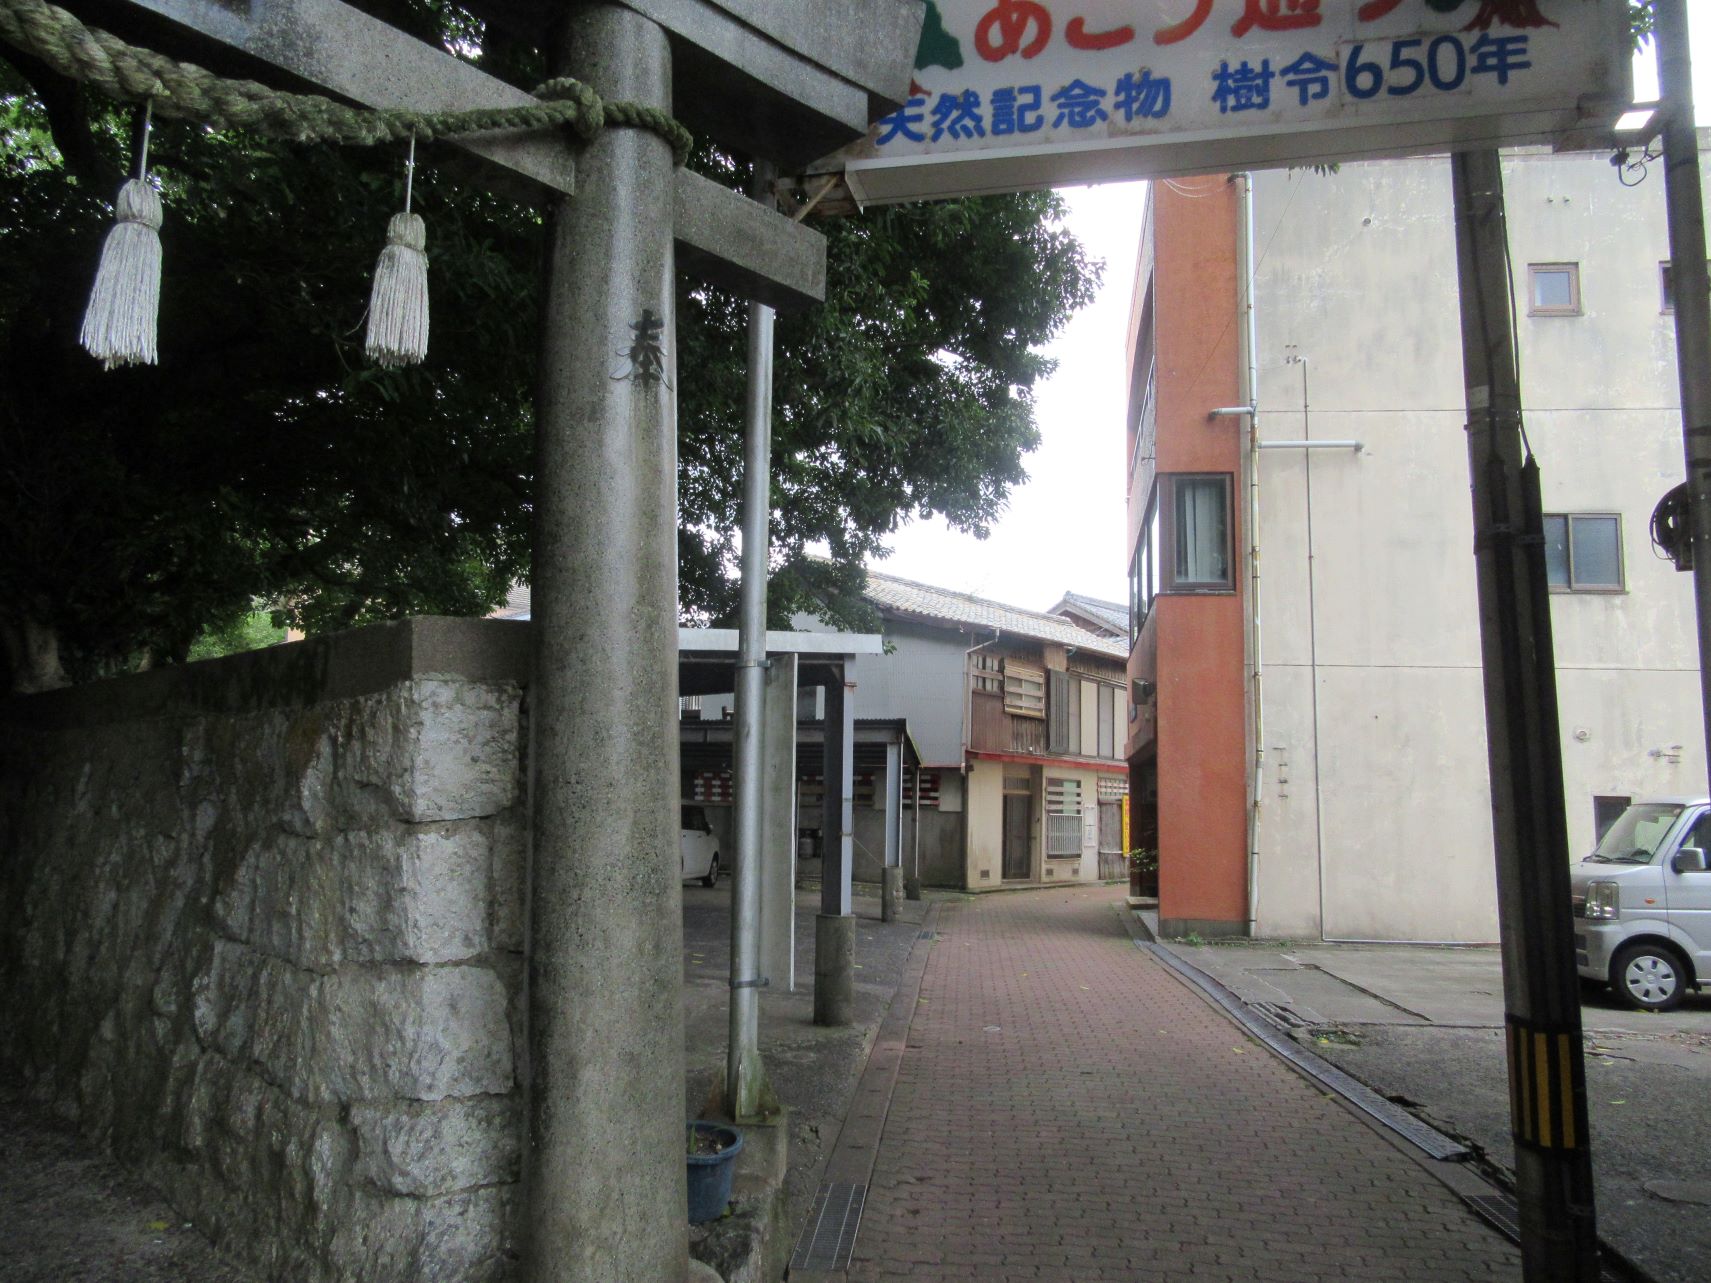 長崎県南松浦郡新上五島町の奈良尾神社付近の『あこう通り』。